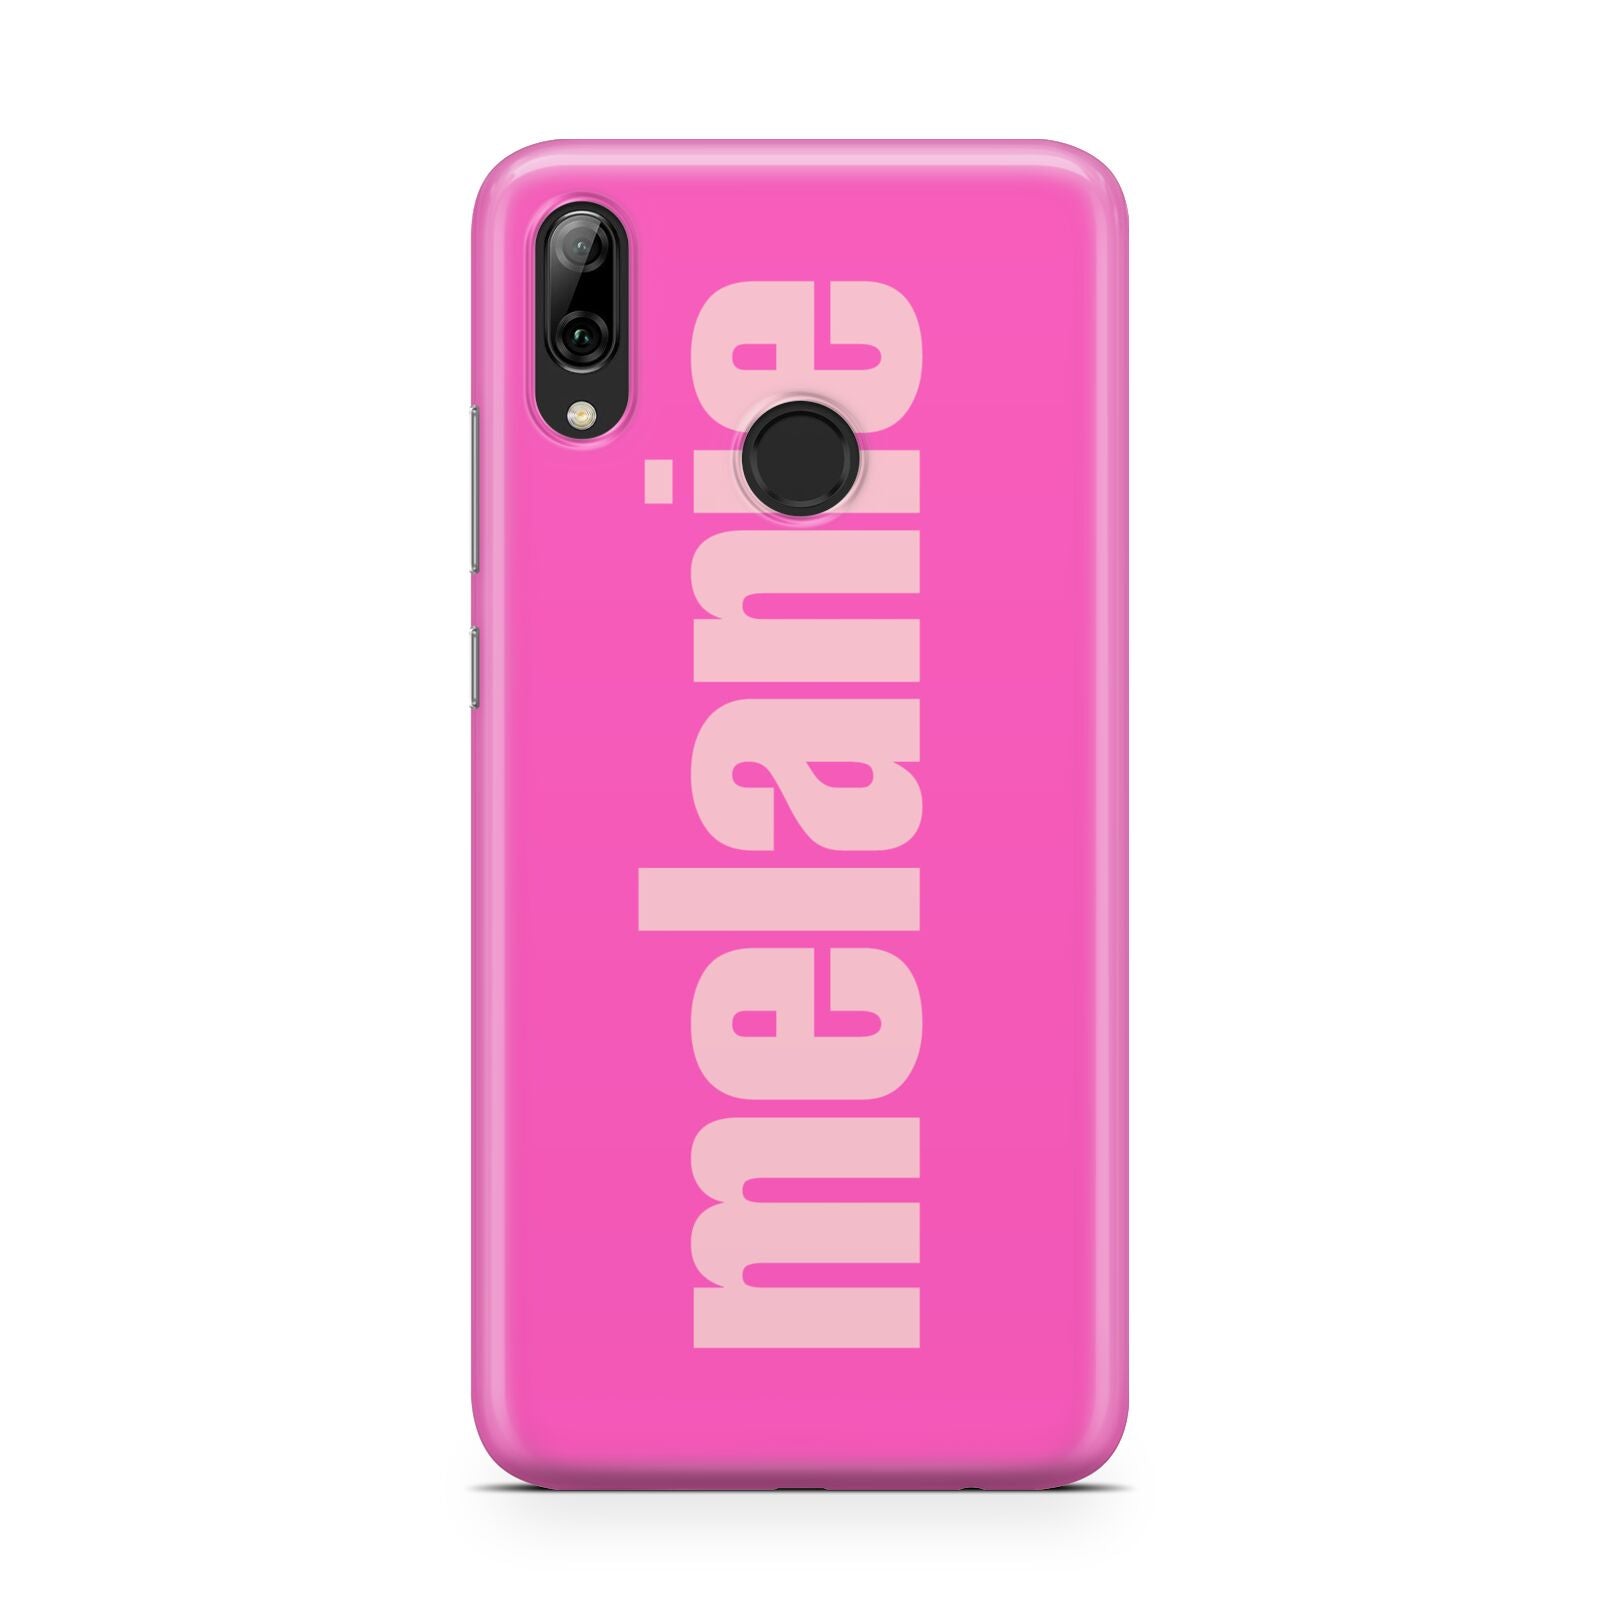 Personalised Pink Huawei Y7 2019